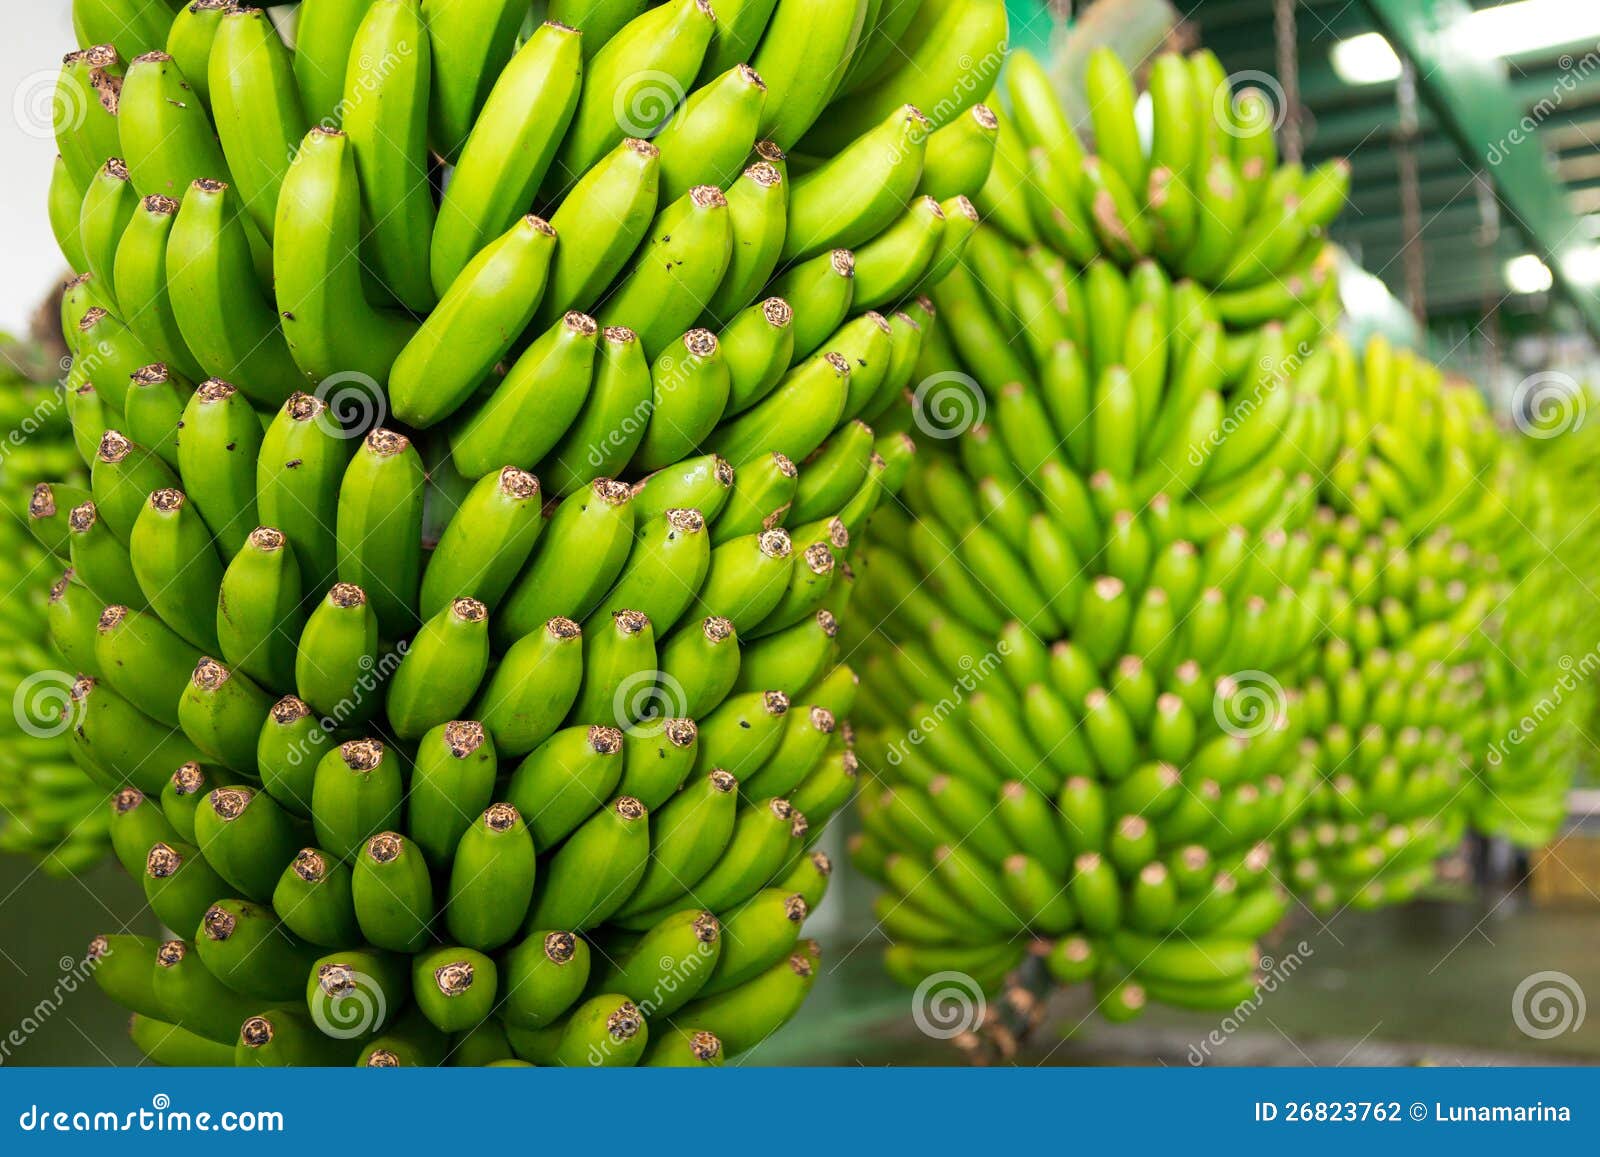 canarian banana platano in la palma